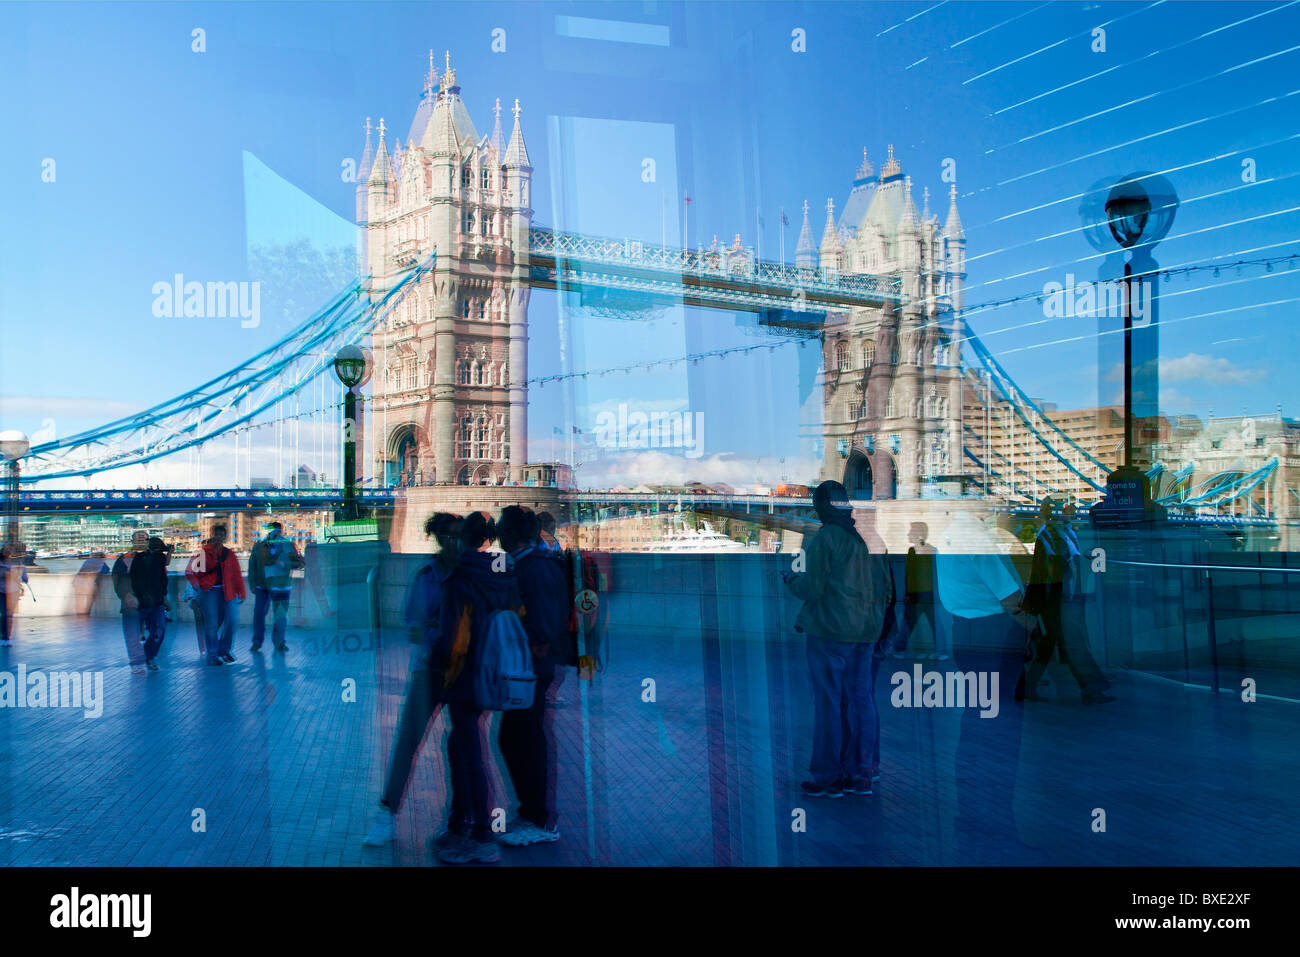 Europe, United Kingdom, England, London, Tower Bridge Stock Photo